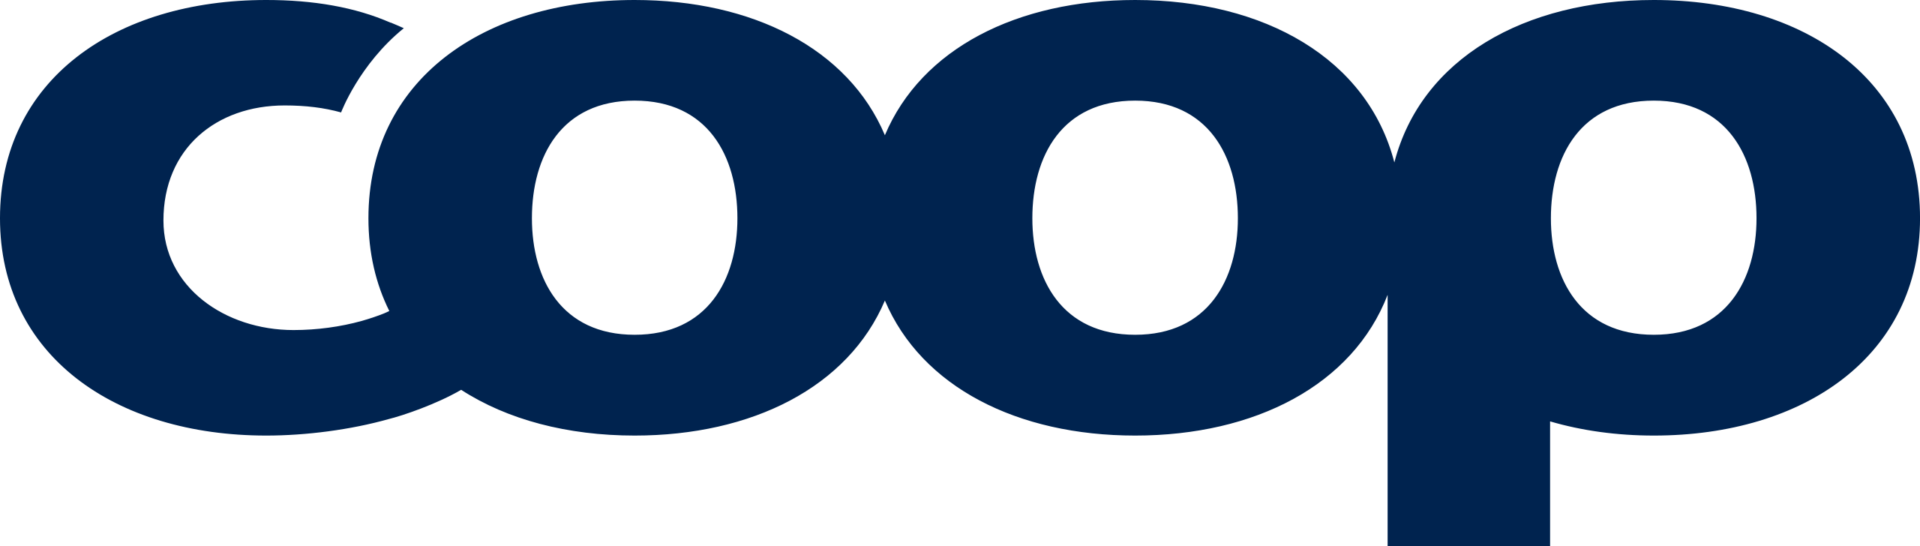 2560px Coop Norge Logo.svg